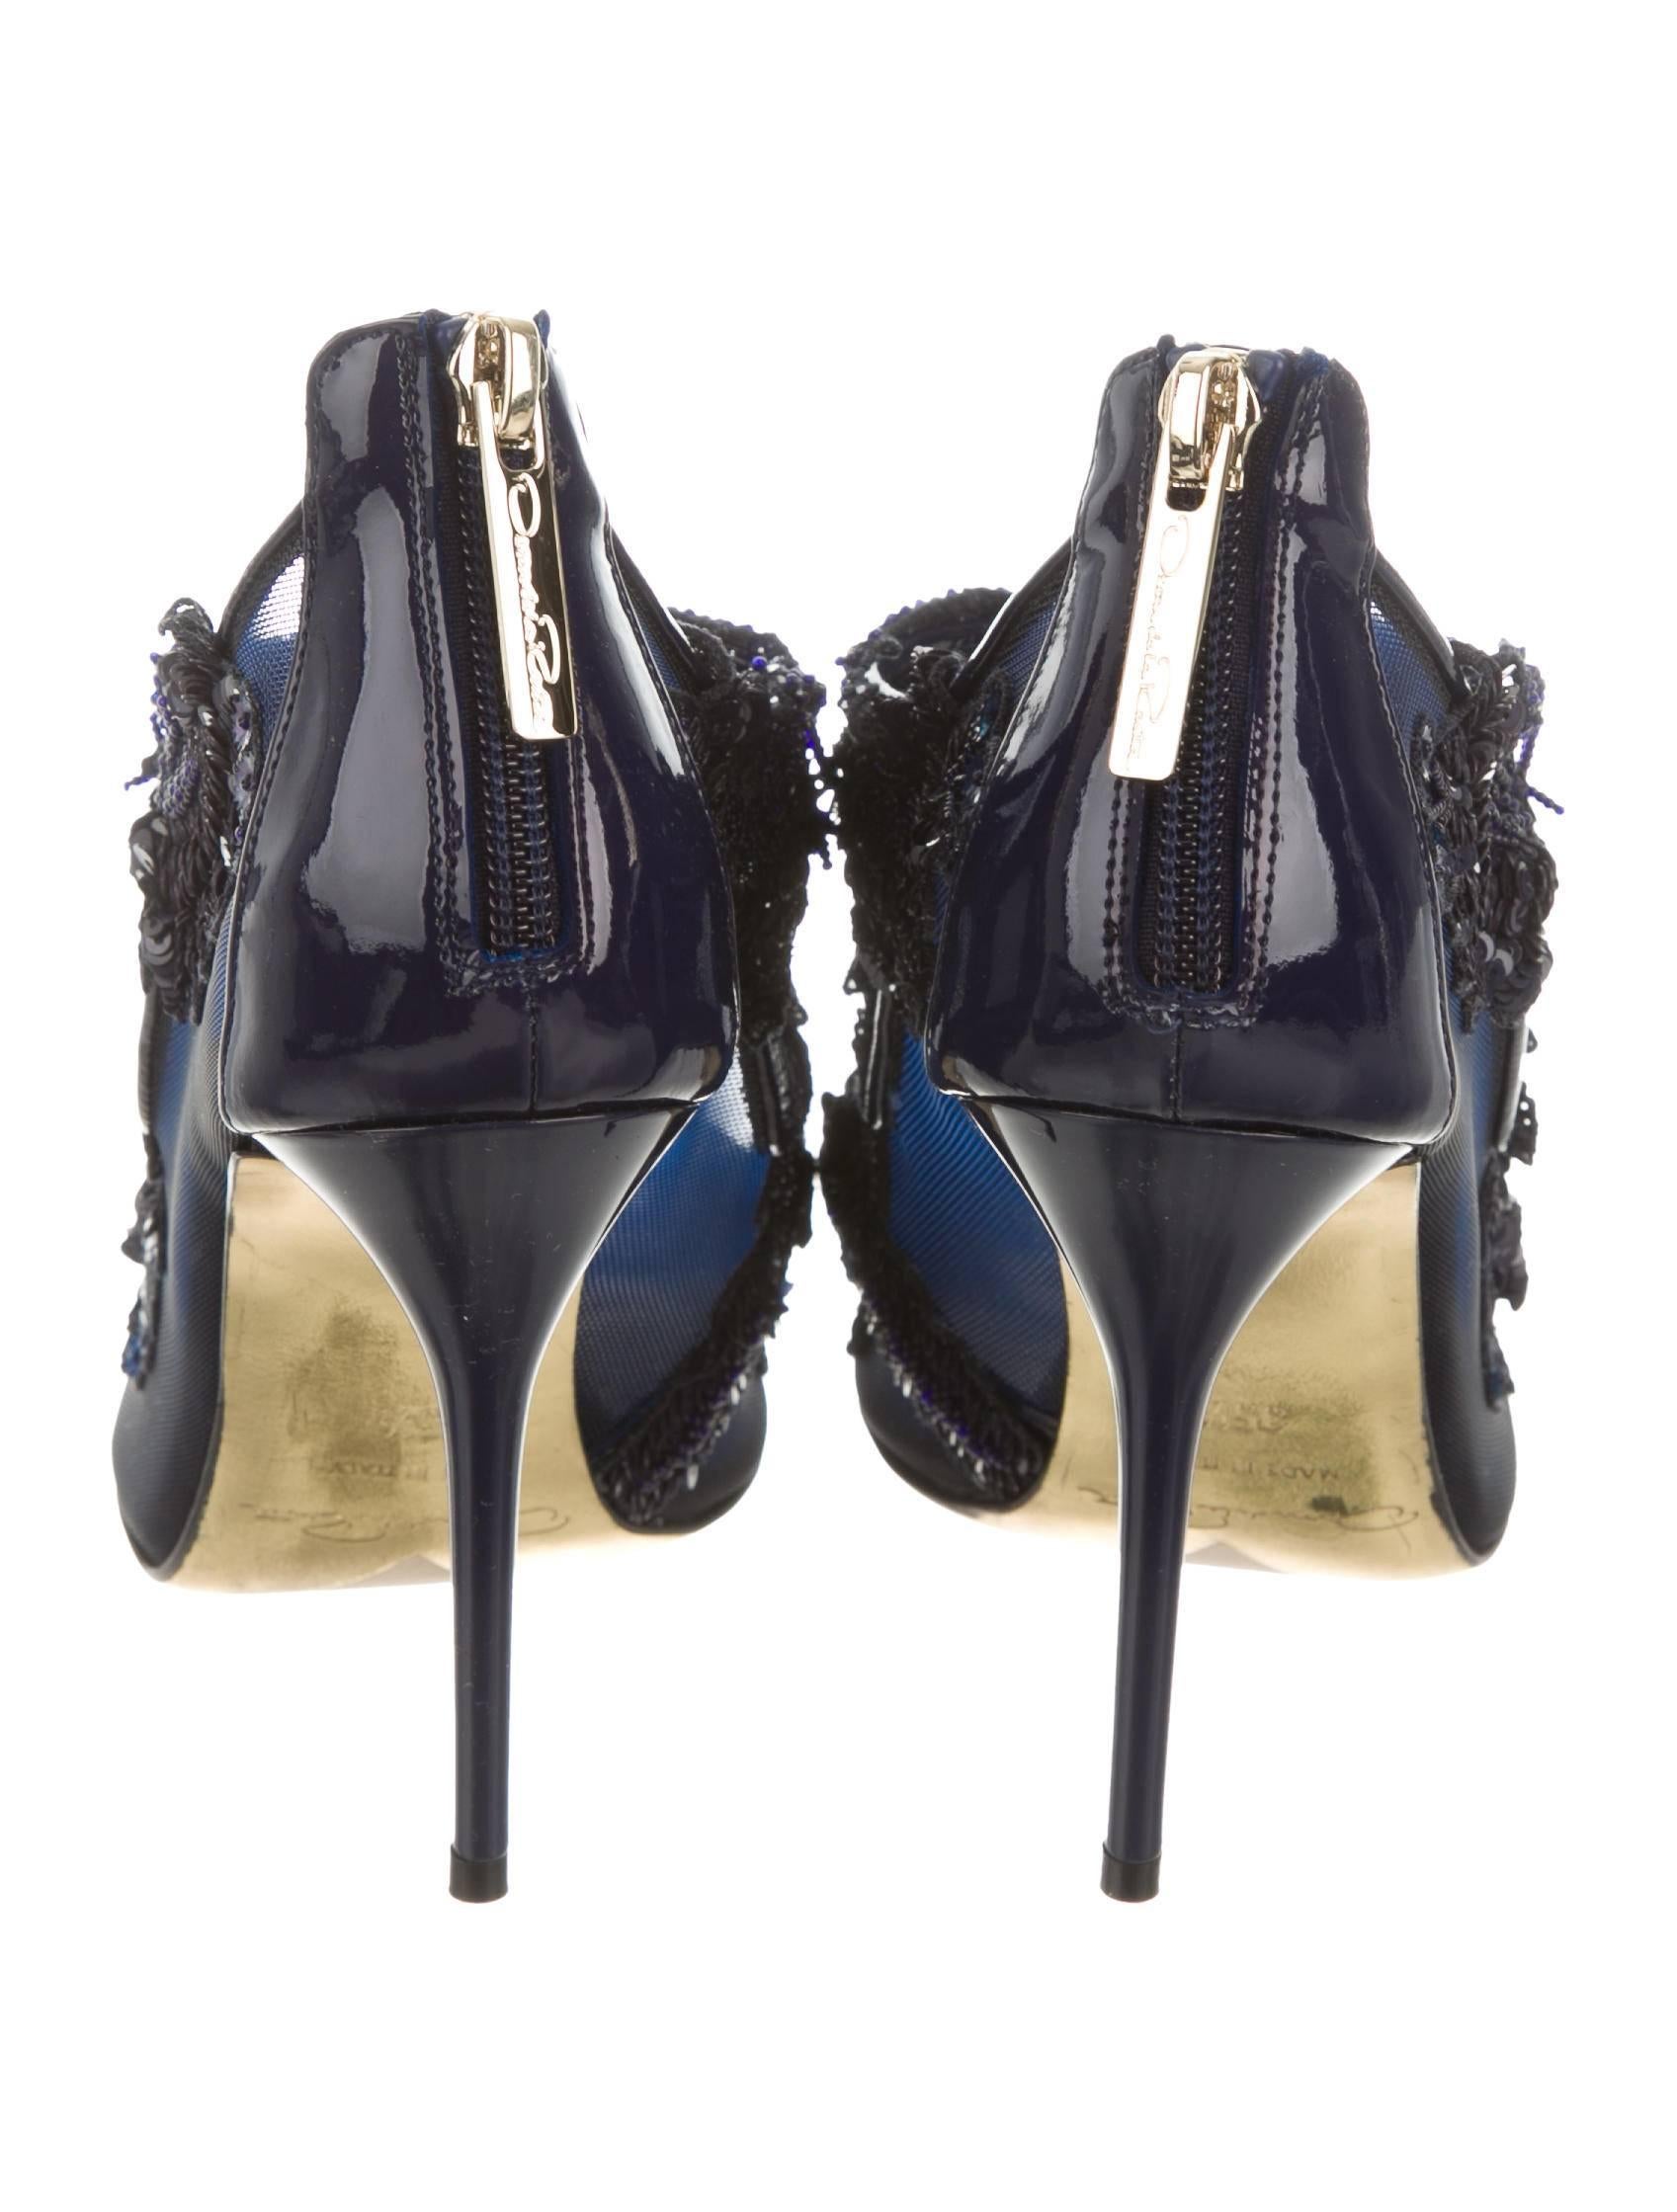 Women's Oscar de la Renta NEW Sequin Bead Evening Sandals Heels in Box 